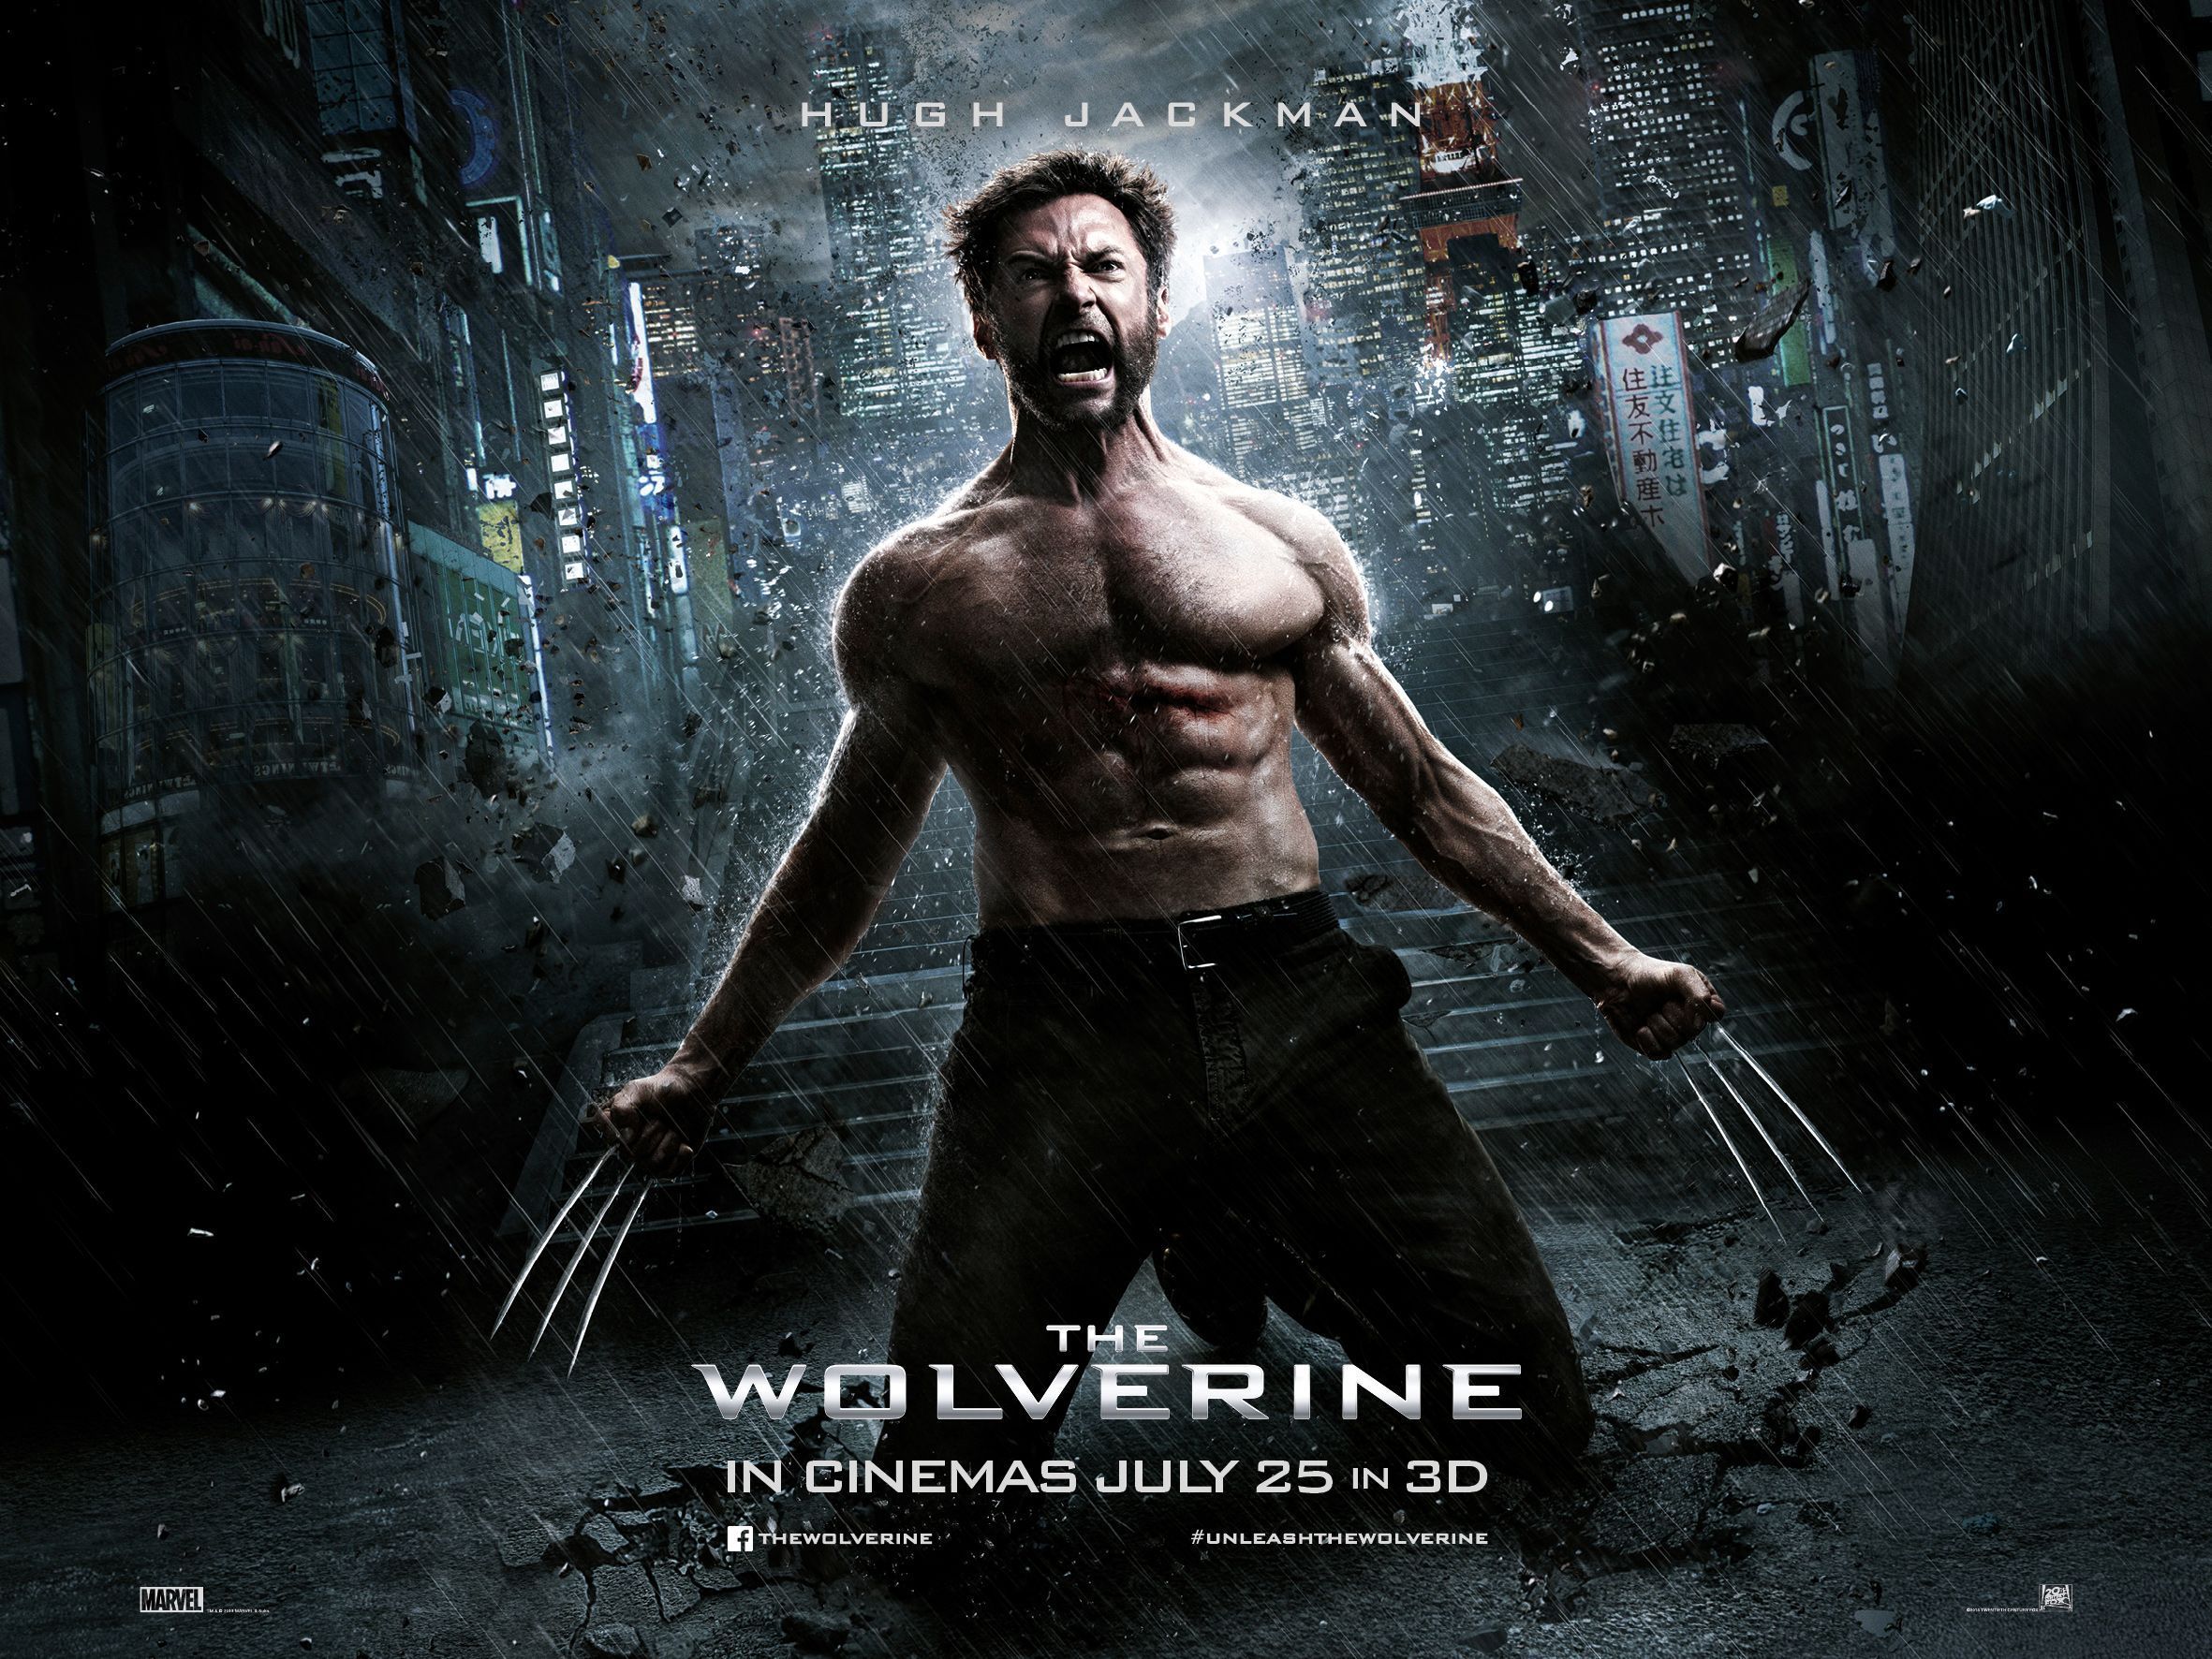 The Wolverine Movie Wallpaper Free The Wolverine Movie Background